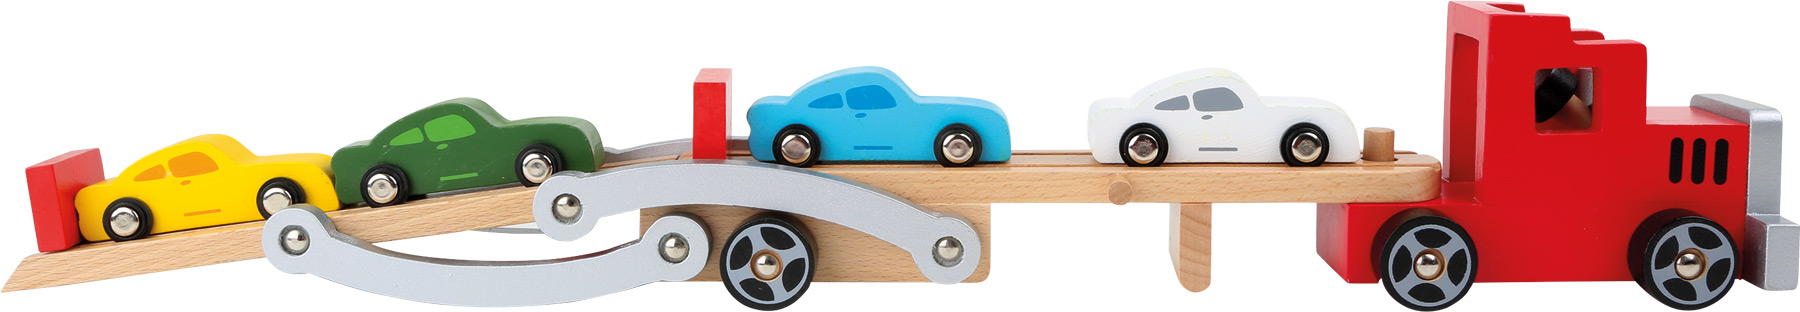 Holzspielzeug Autotransporter 34cm - Spielzeug Autotransporter mit Autos aus Holz von small foot